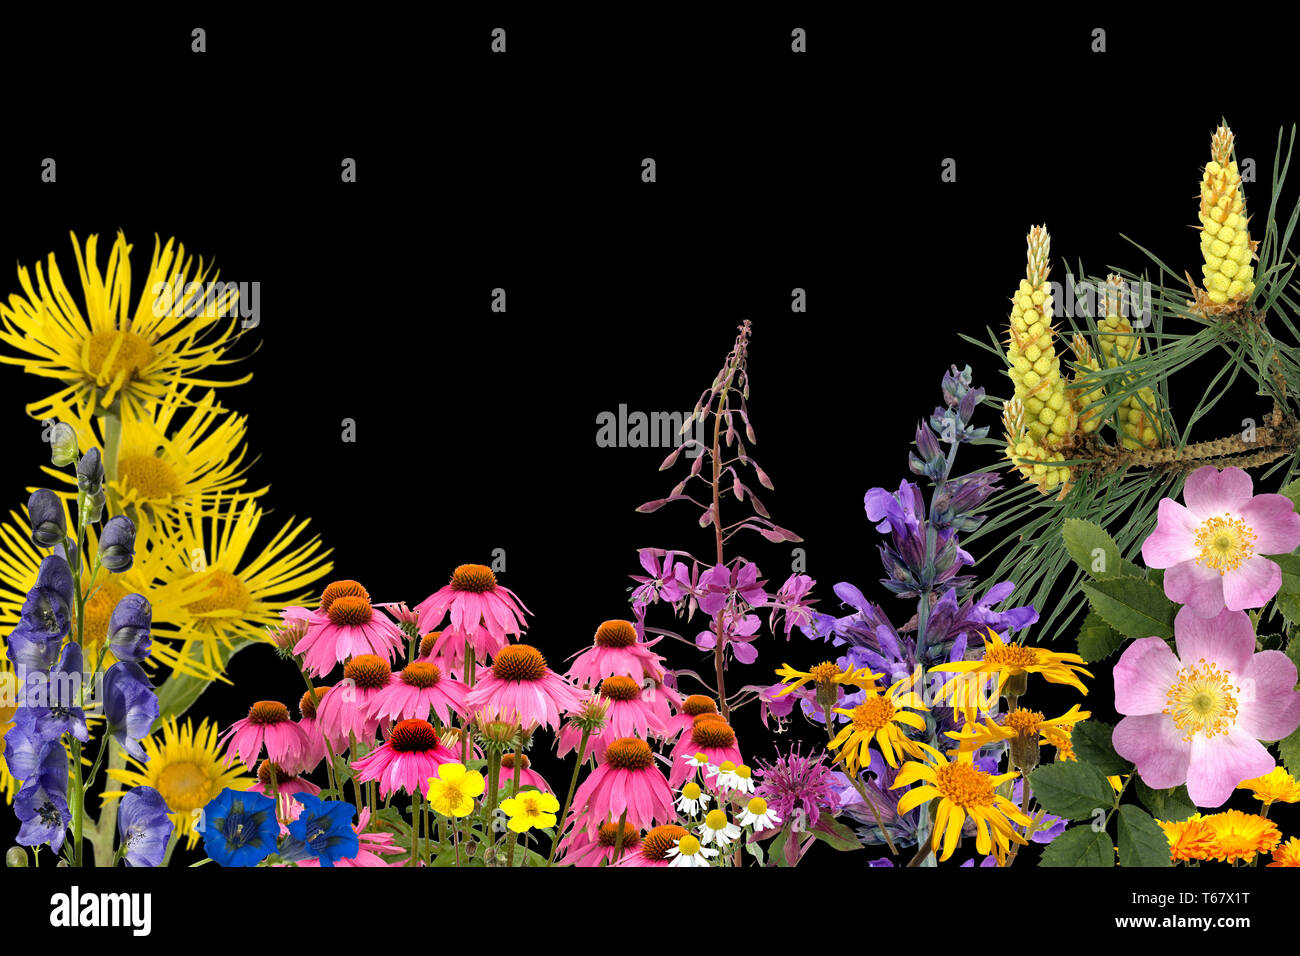 officinal plants, medical plants, arrangement Stock Photo